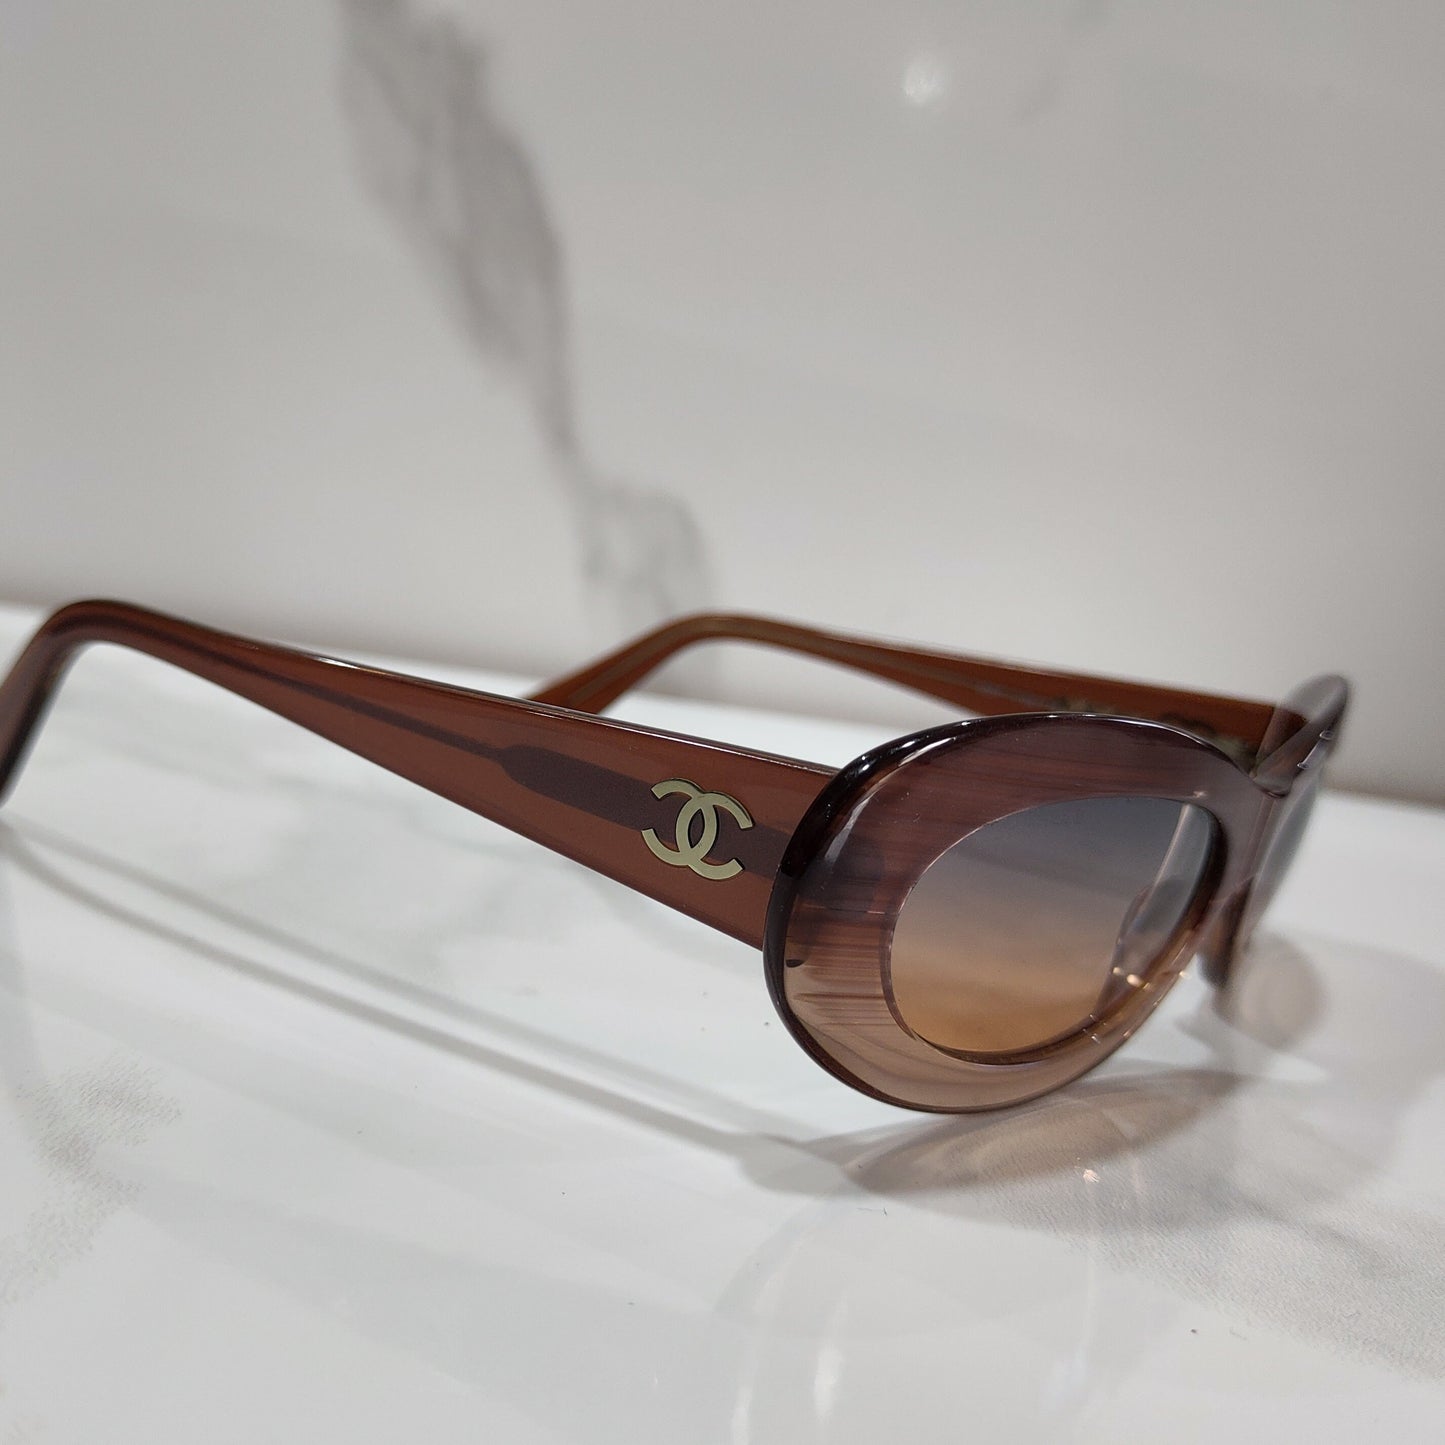 Chanel modello 5007 iconici occhiali da sole lunetta brille 90s tonalità